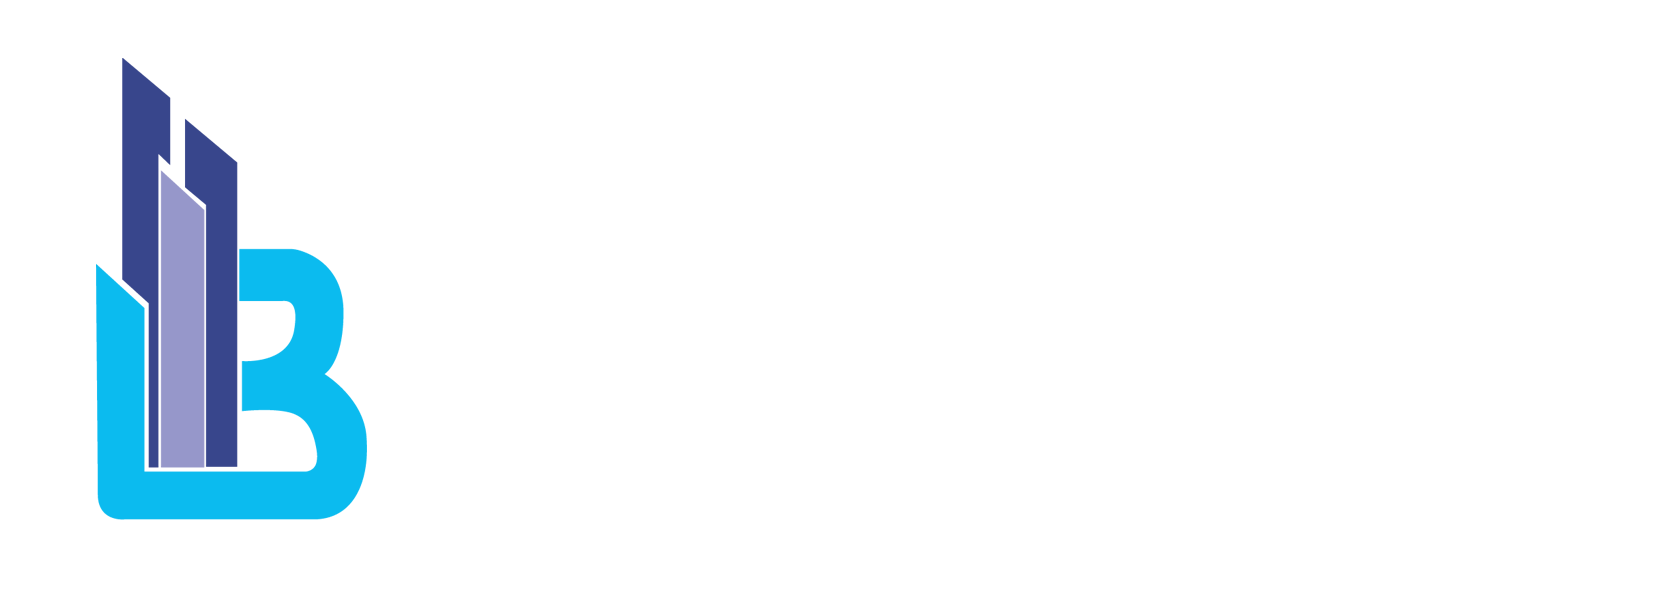 Bait Al Saada